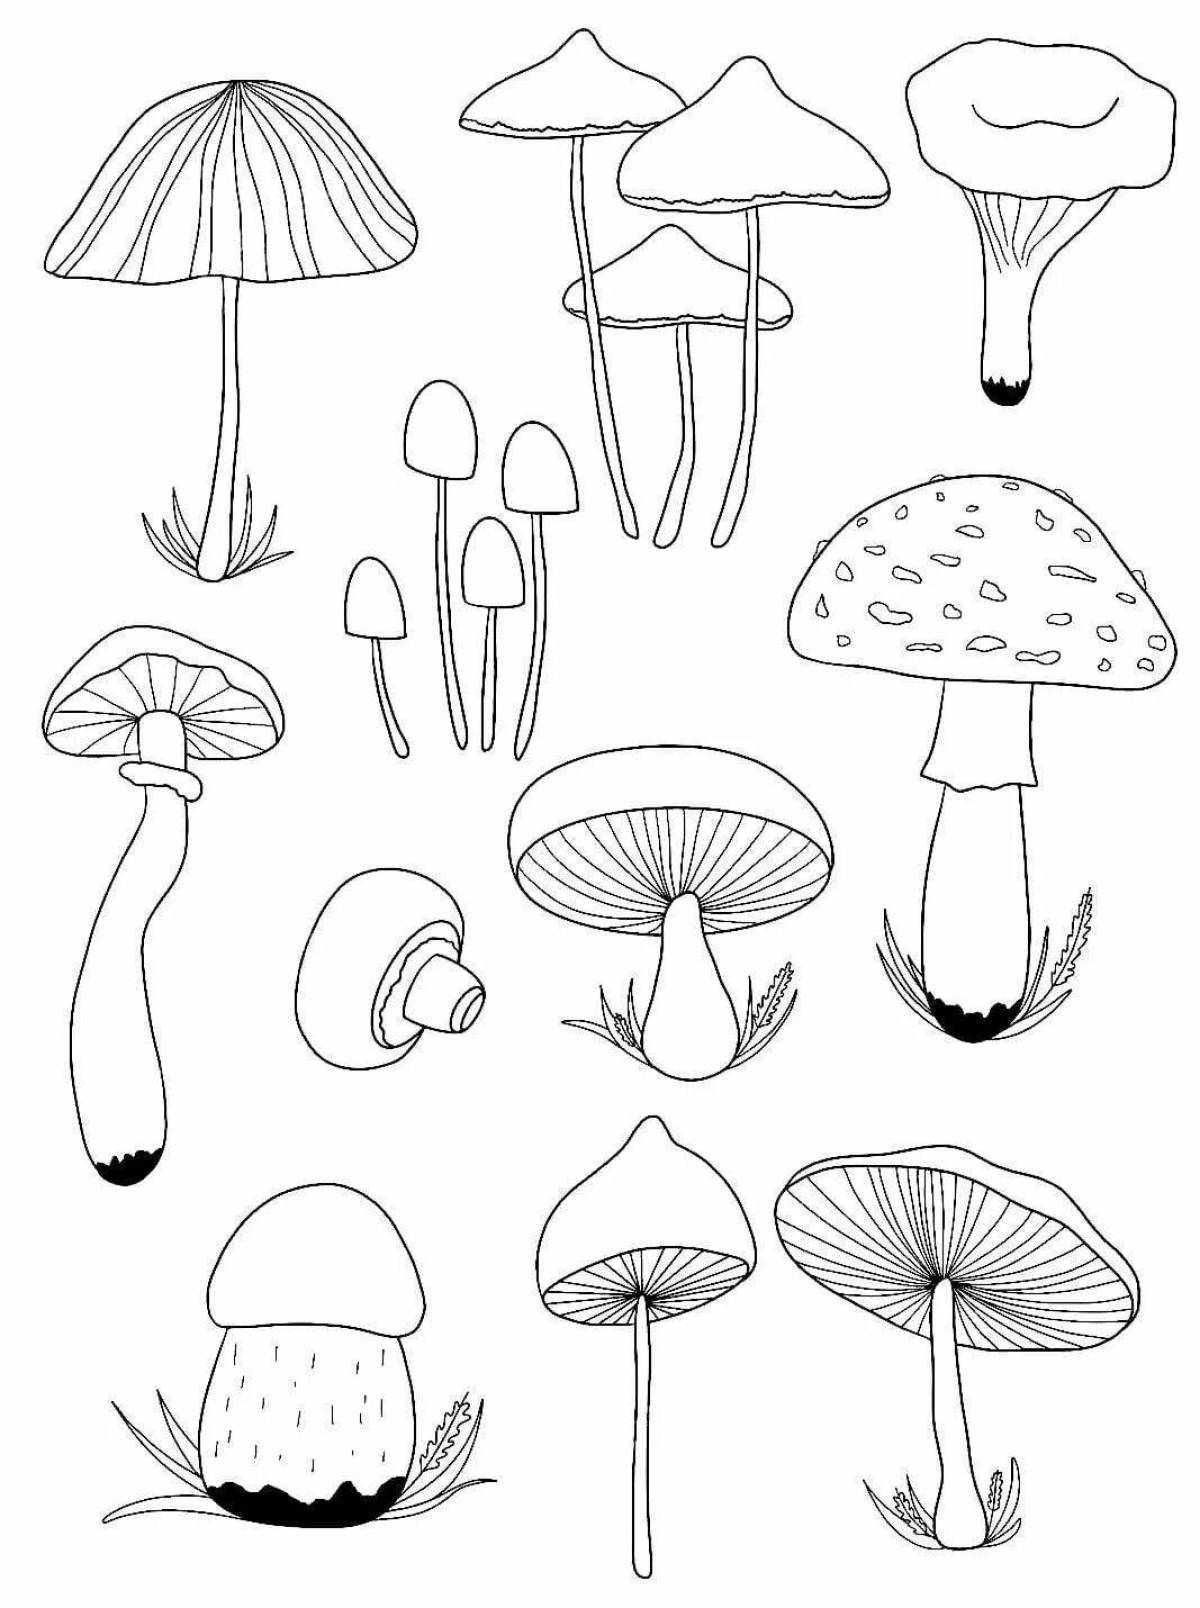 Раскраски с грибами (все можно распечатать бесплатно)